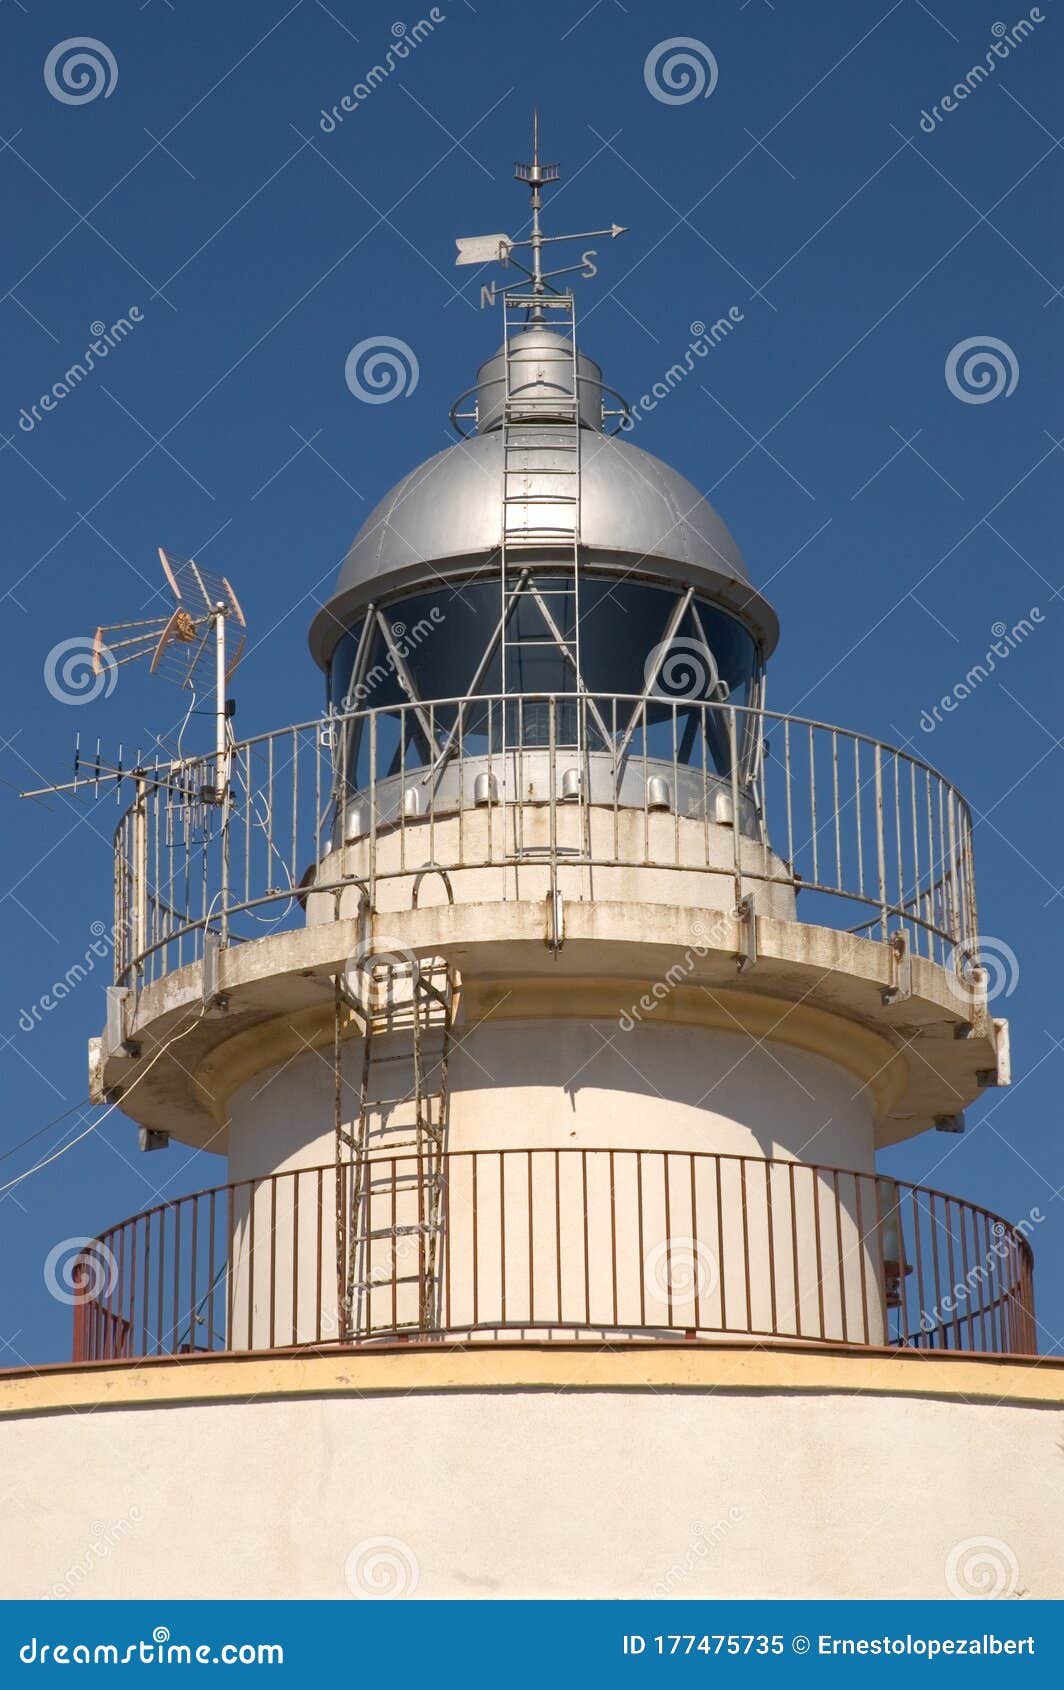 lighthouse of grao de castellon